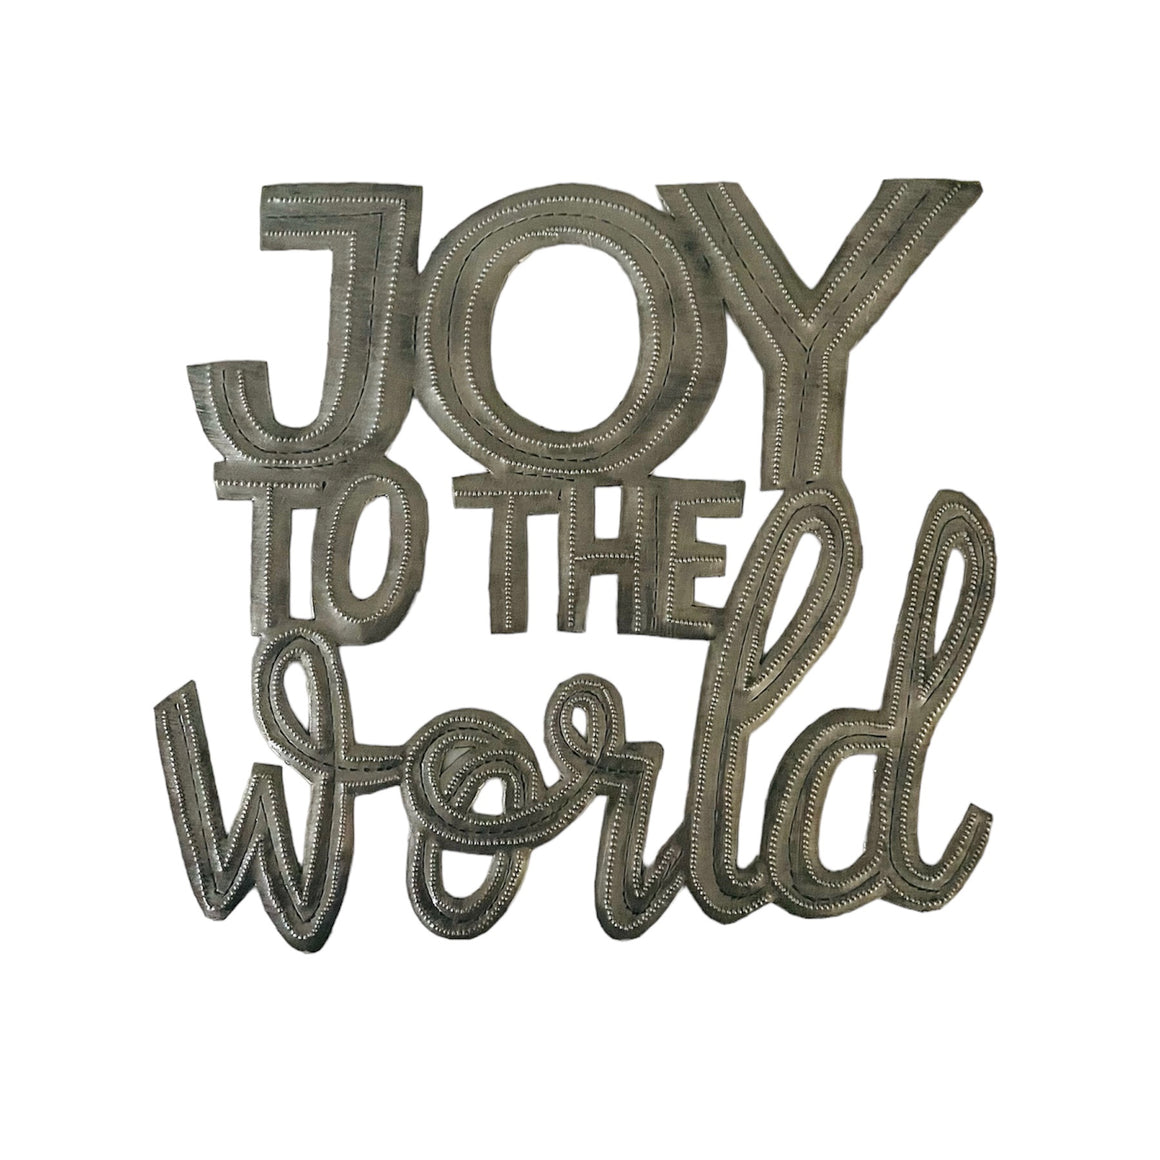 Haiti | Joy to the world